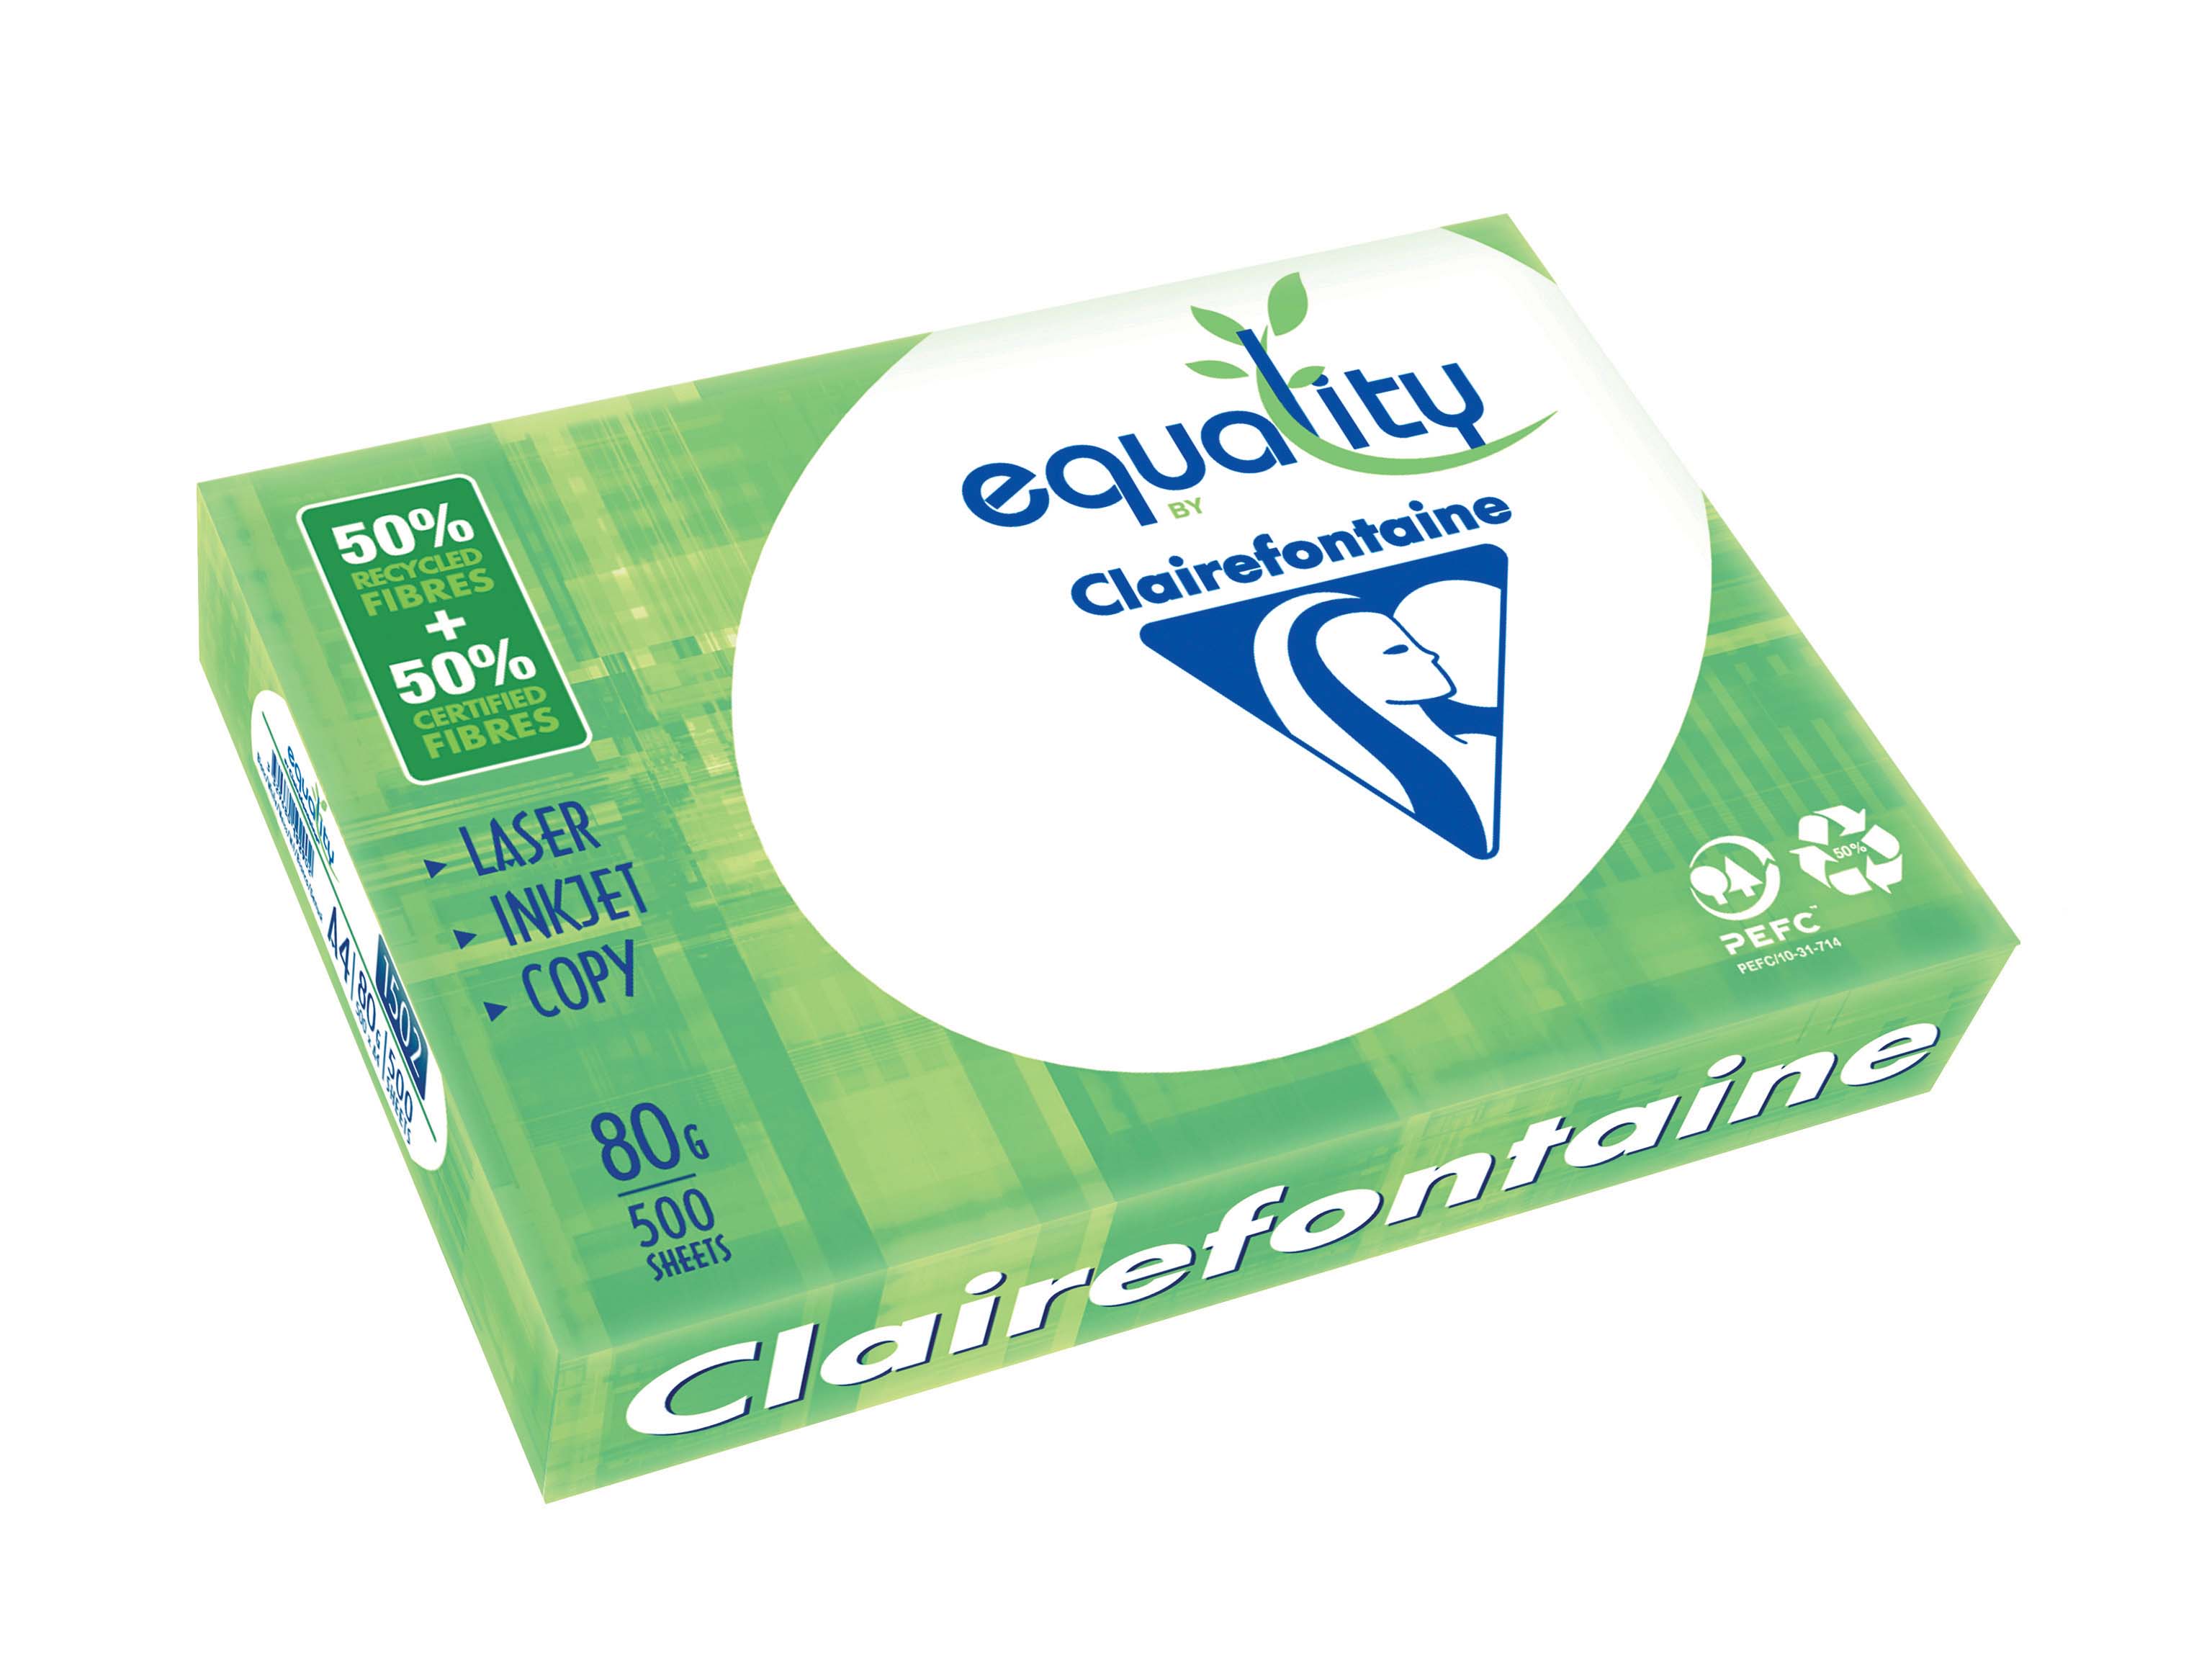 Clairefontaine Equality - Papier blanc - A4 (210 x 297 mm) - 80 g/m² - 50% recyclé - 2500 feuilles (carton de 5 ramettes)